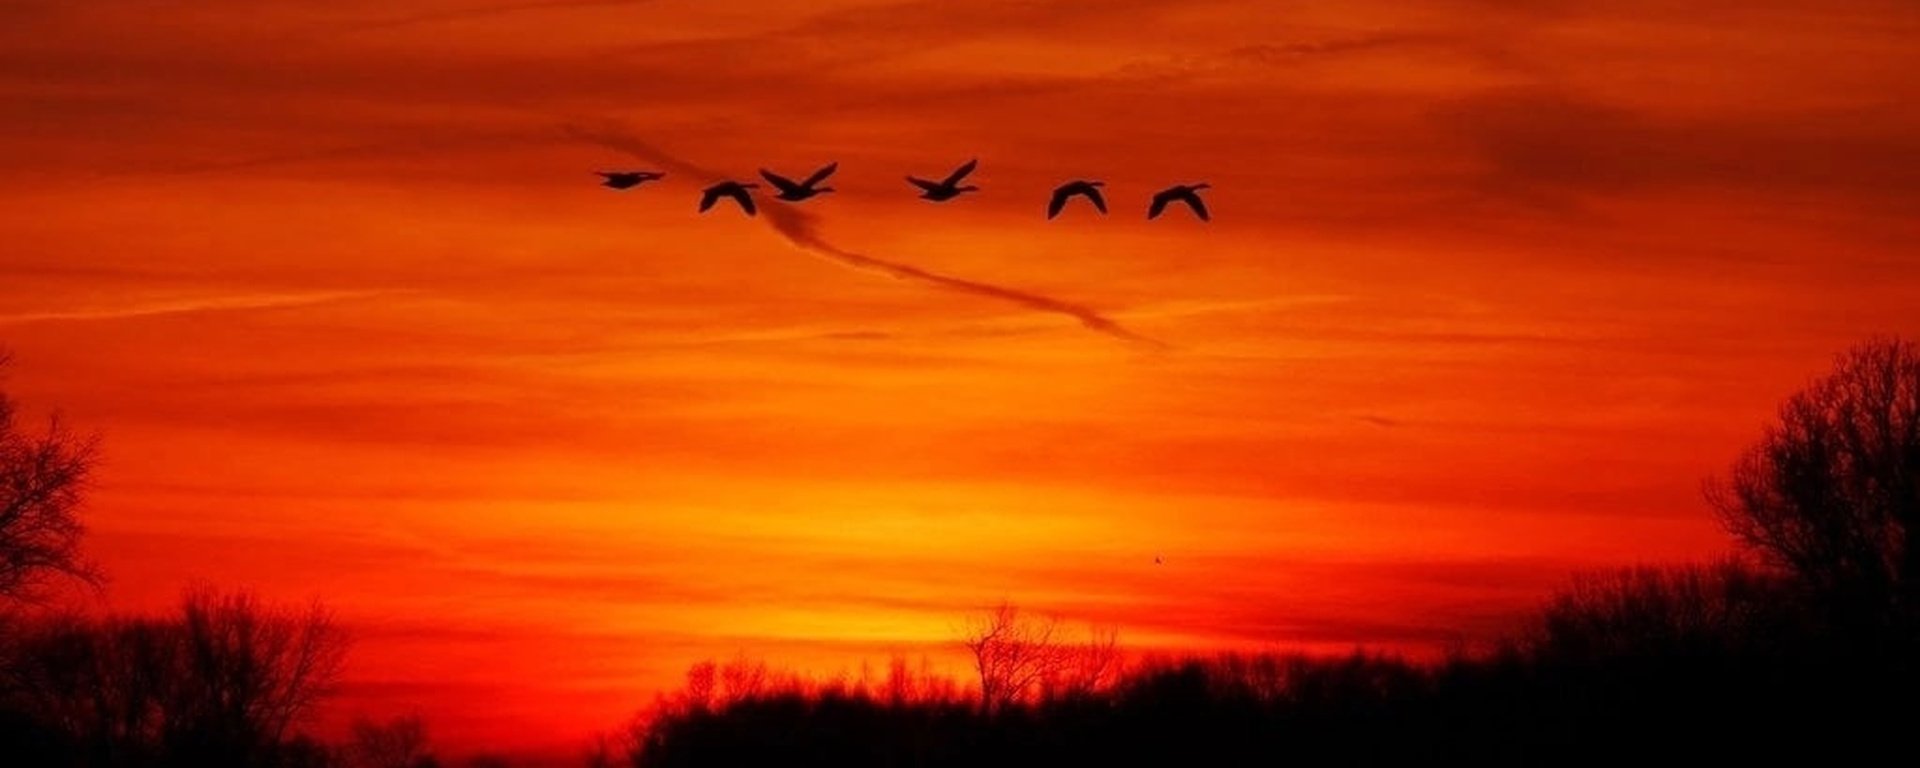 Песня далеко далеко птицы улетели. Птицы улетают. Птицы на закате. Клин журавлей. Журавлиный Клин на закате.